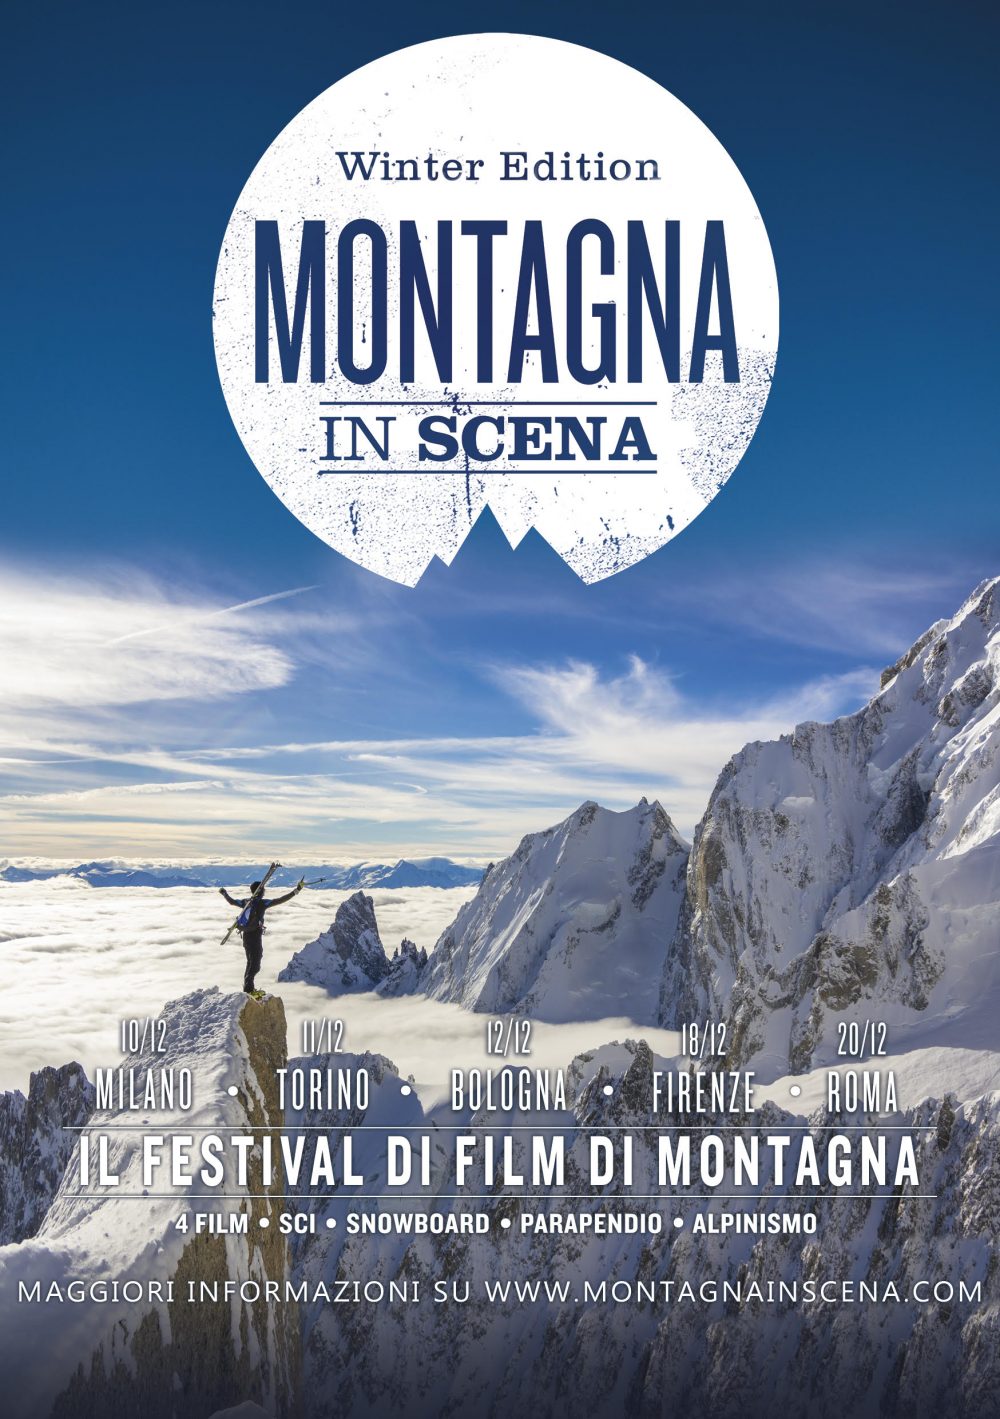 Festival Montagna in scena